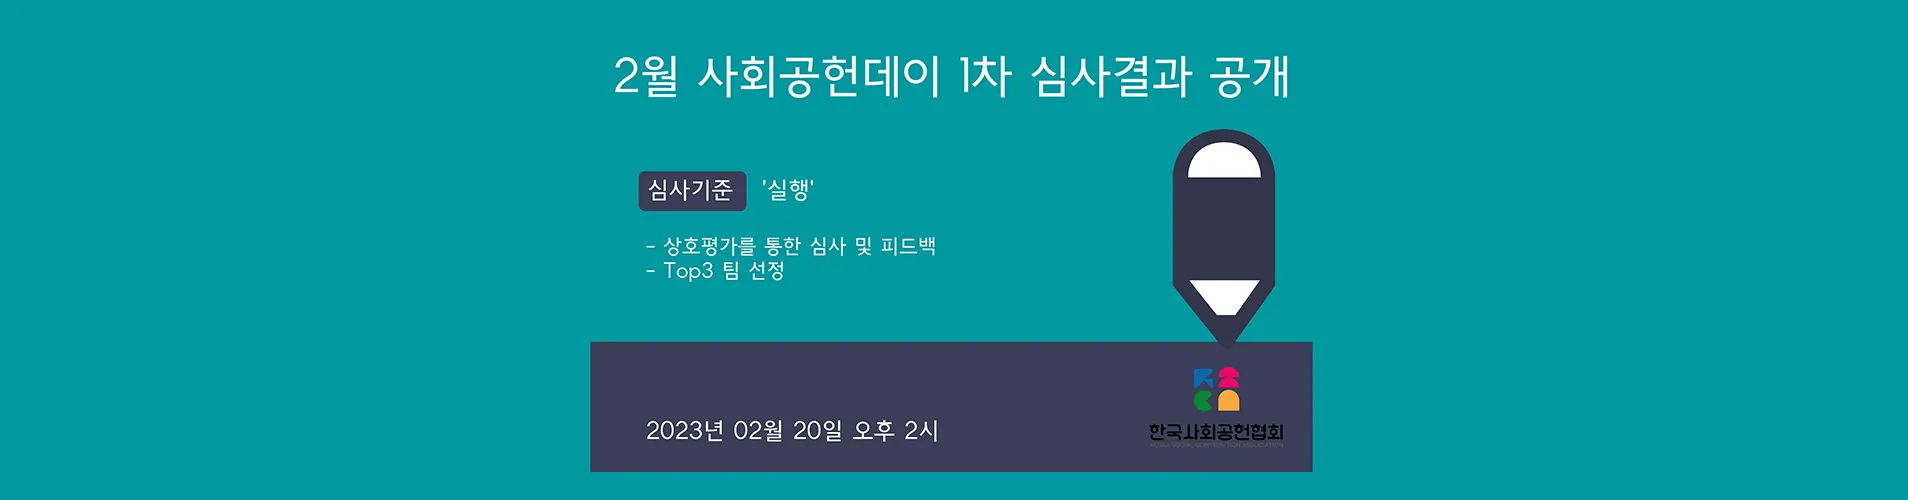 [02/20] 2월 사회공헌데이 1차 심사결과 공개(Top3 선정)